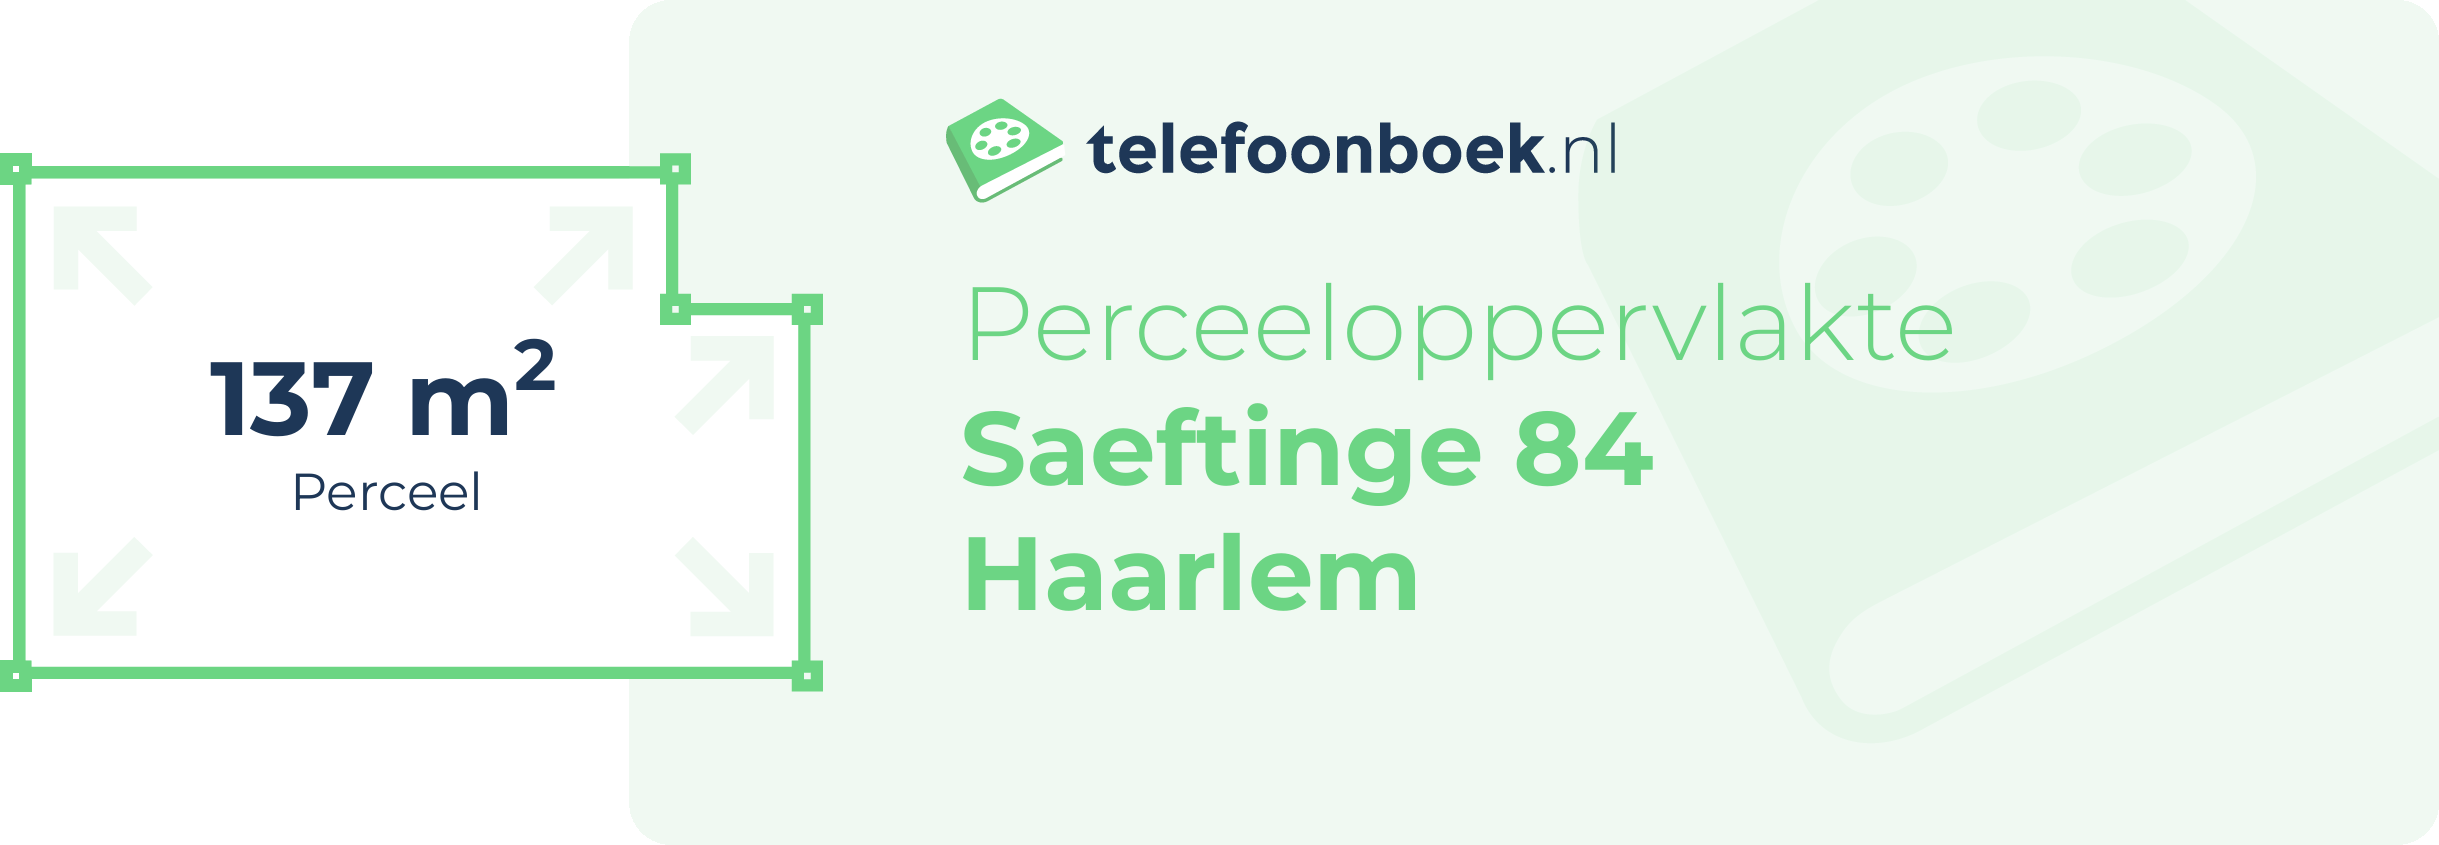 Perceeloppervlakte Saeftinge 84 Haarlem